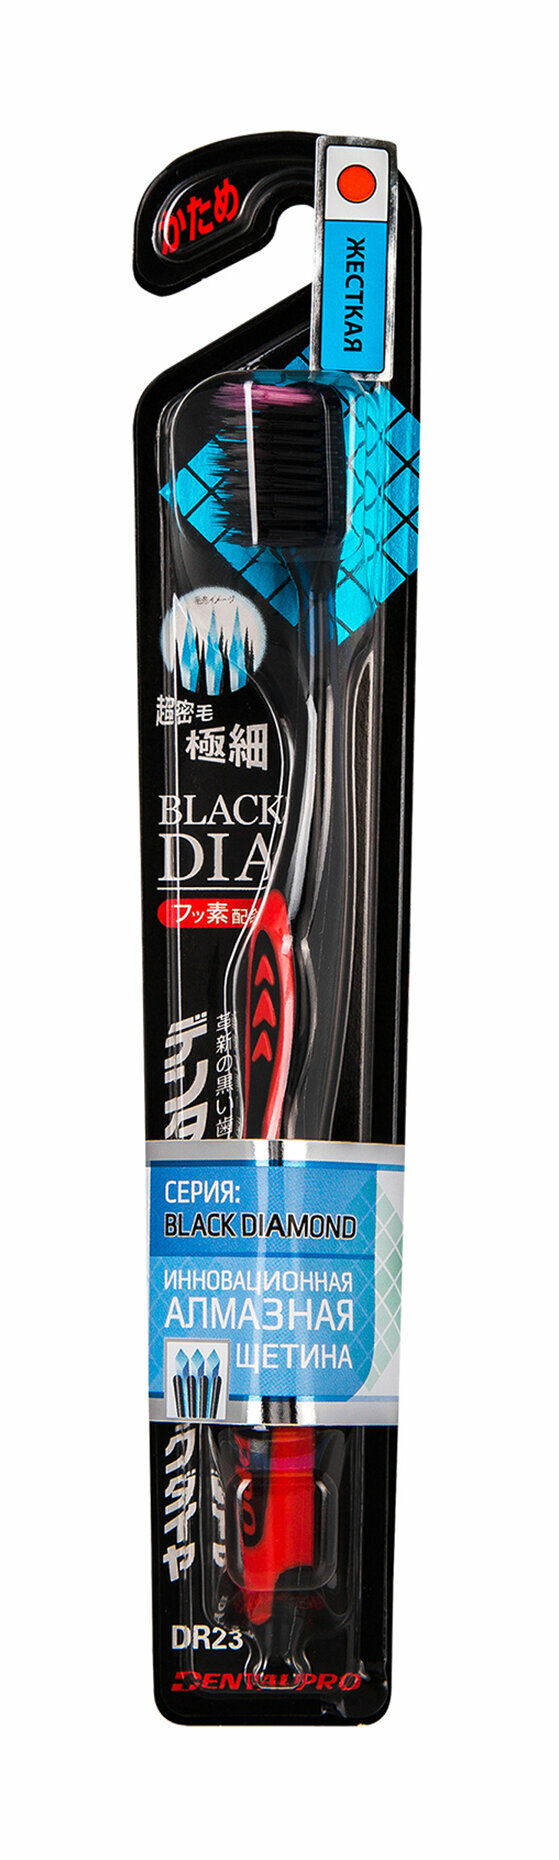 Многоуровневая жесткая зубная щетка с ультратонкой щетиной алмазной формы DentalPro Black Diamond Firm